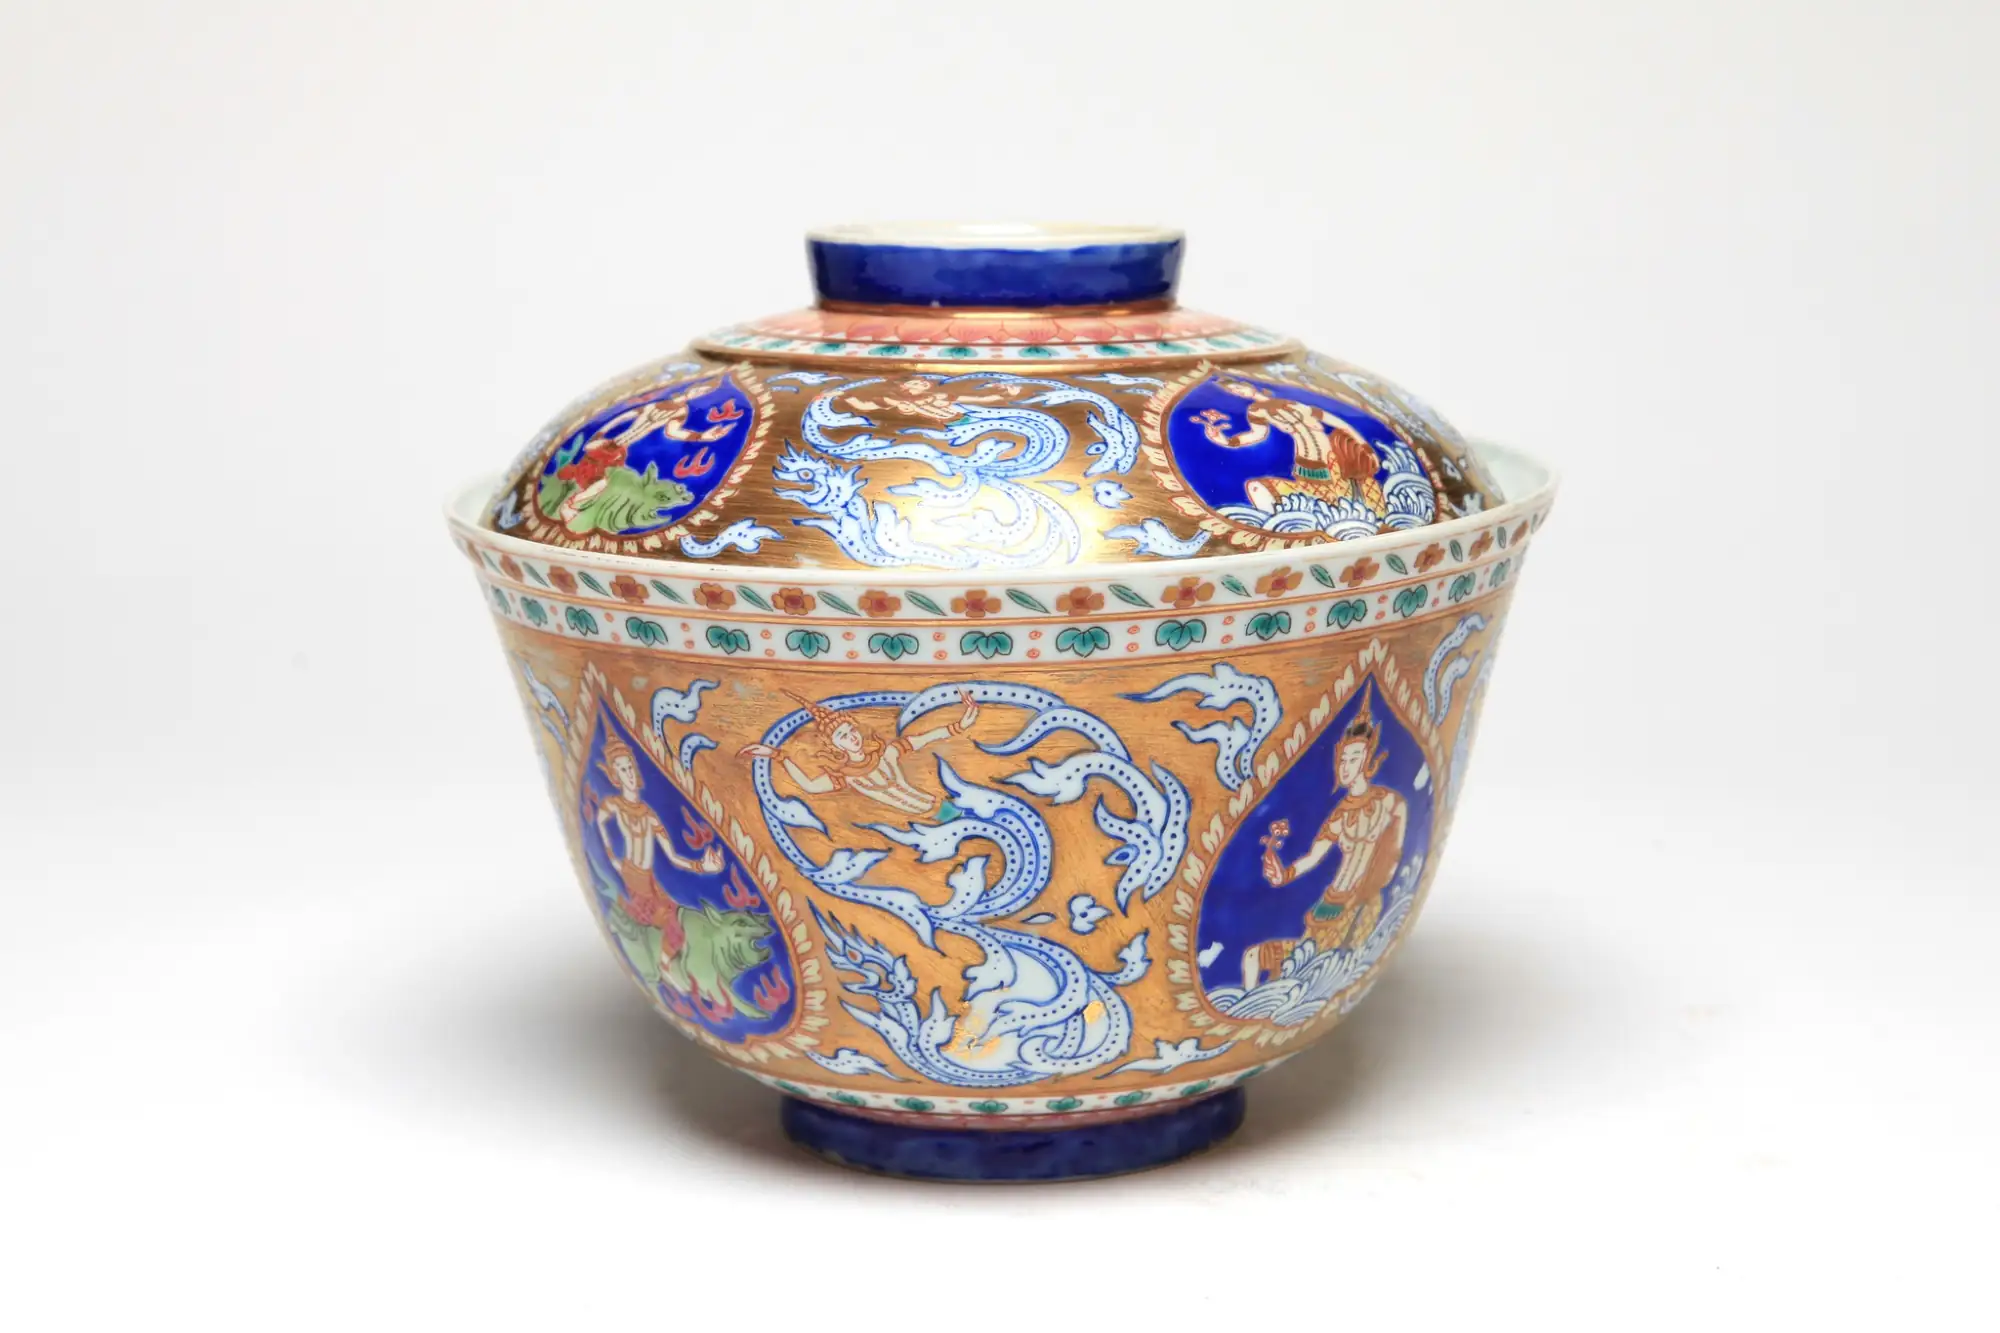 今年RCB拍賣會亮點拍品是一只名為「四大元素神靈」泰國班加隆(Benjarong)瓷碗